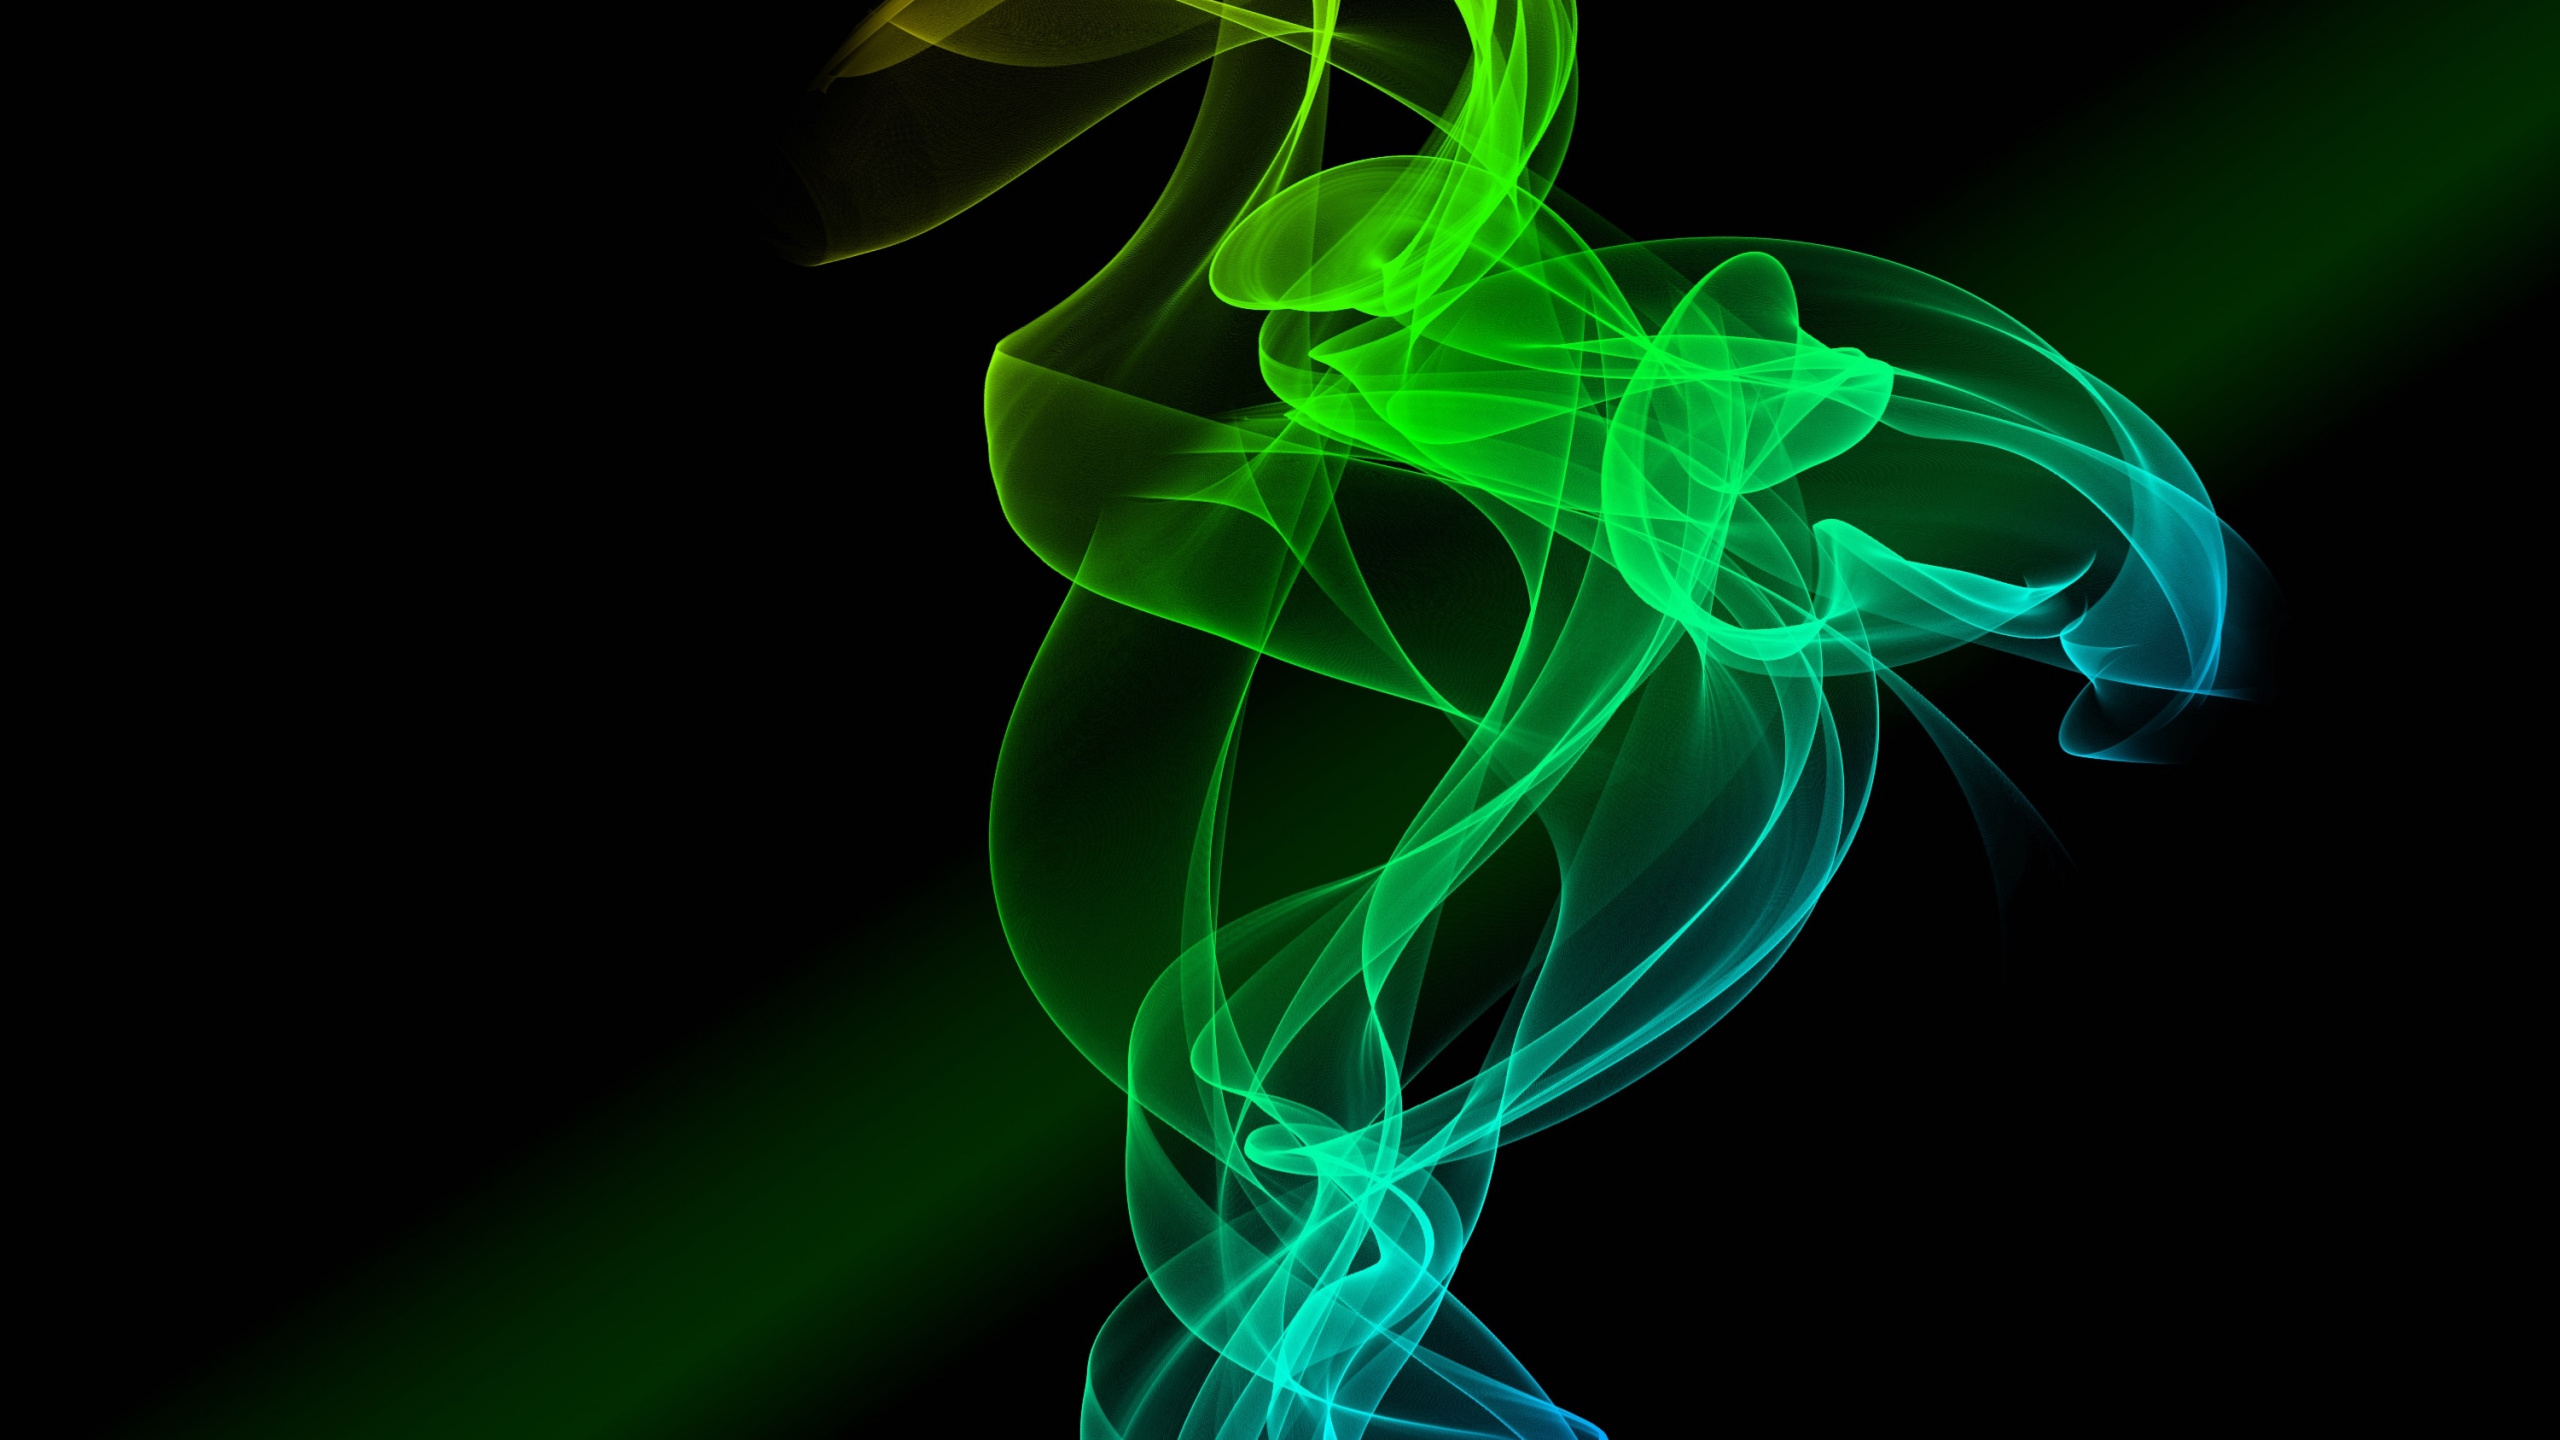 烟雾, 绿色的, 图形设计, 色彩, 光 壁纸 2560x1440 允许